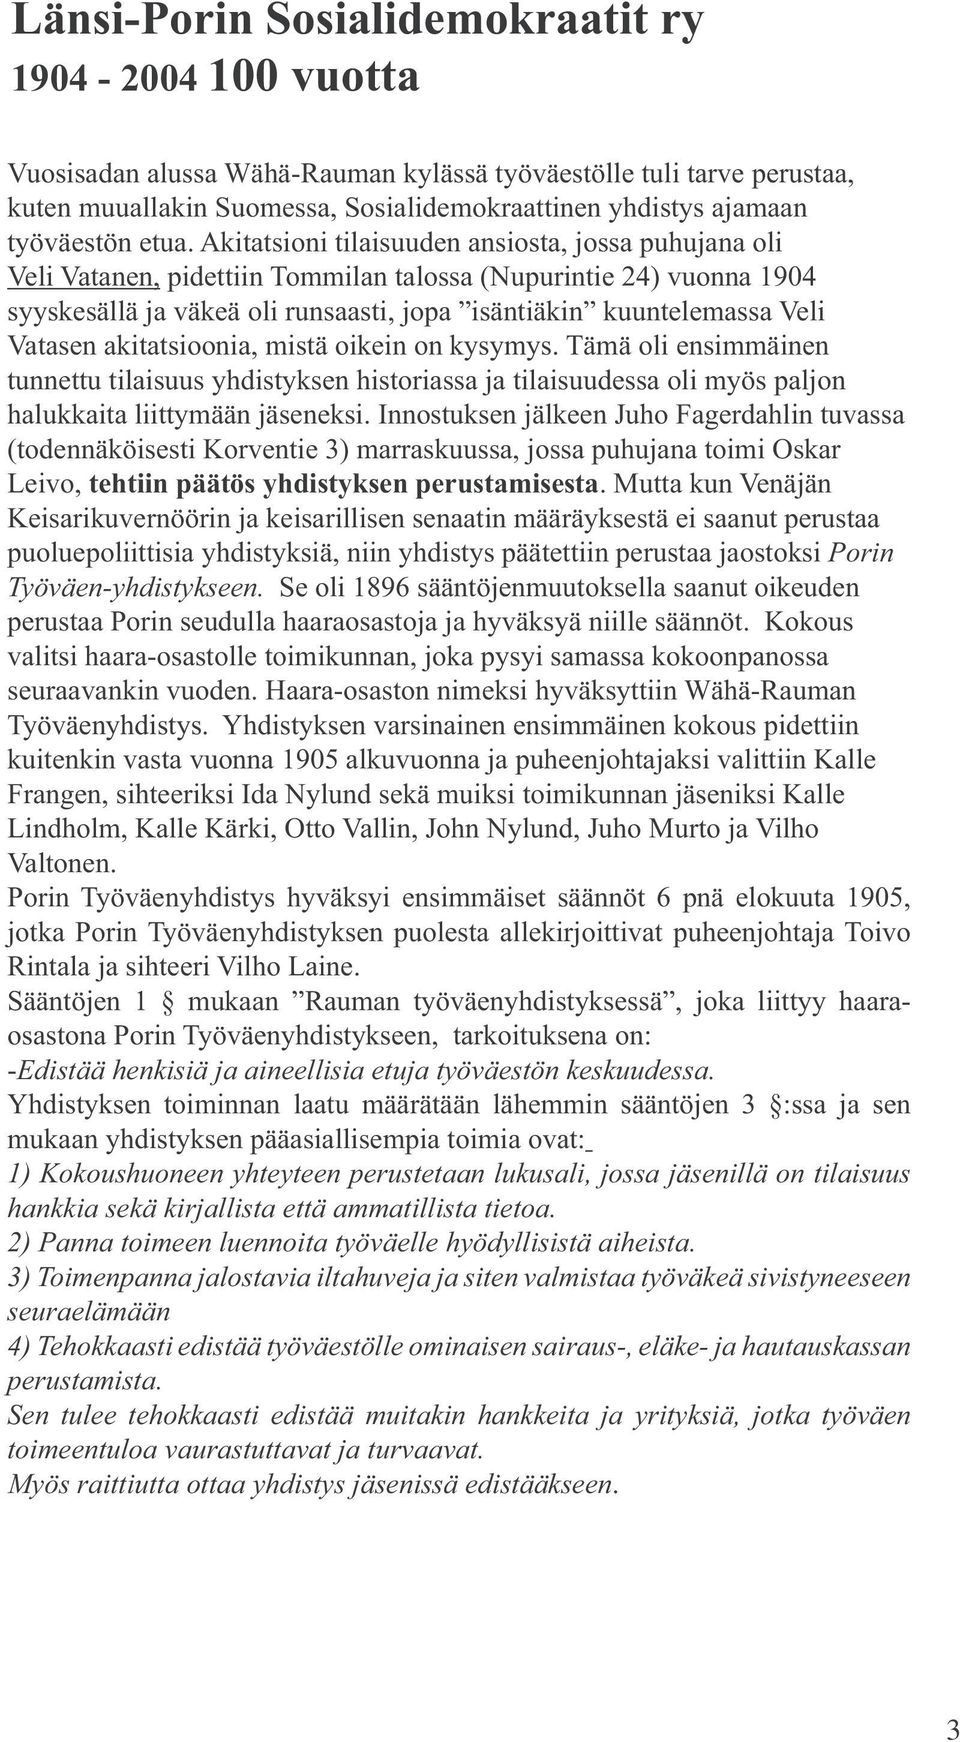 Akitatsioni tilaisuuden ansiosta, jossa puhujana oli Veli Vatanen, pidettiin Tommilan talossa (Nupurintie 24) vuonna 1904 syyskesällä ja väkeä oli runsaasti, jopa isäntiäkin kuuntelemassa Veli